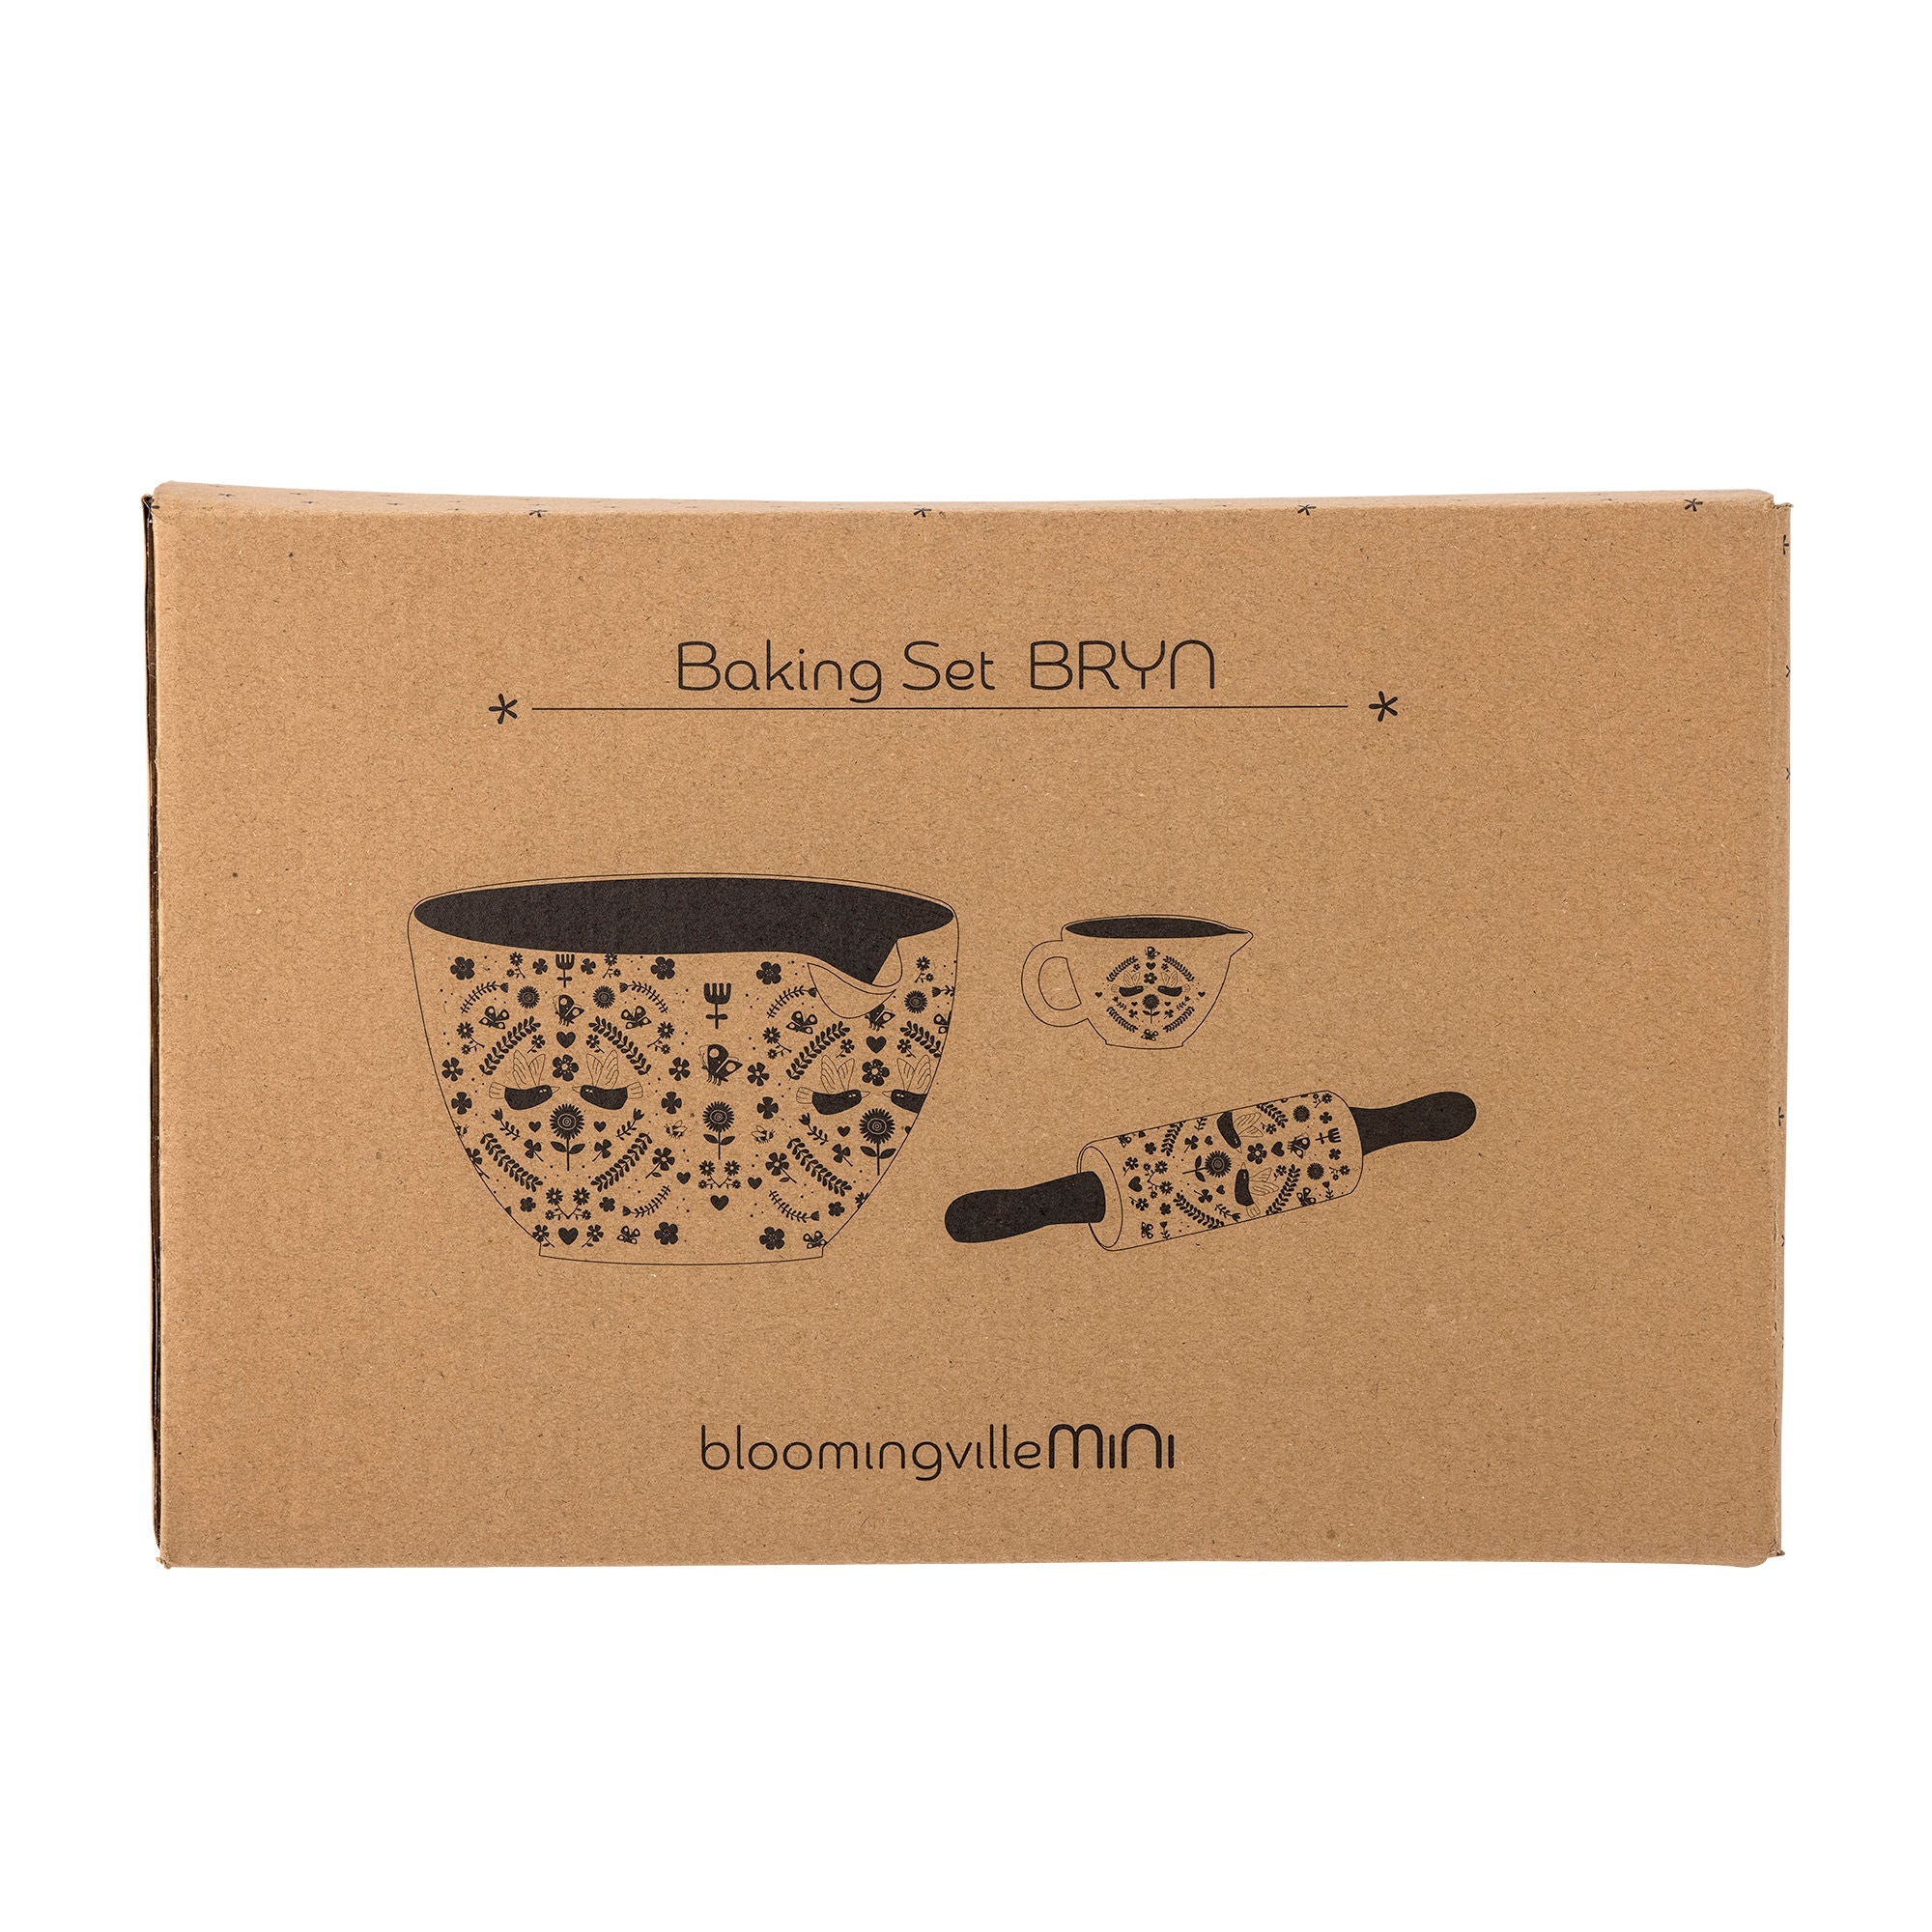 Bloomingville MINI Bryn Baking Set, Brown, Stoneware